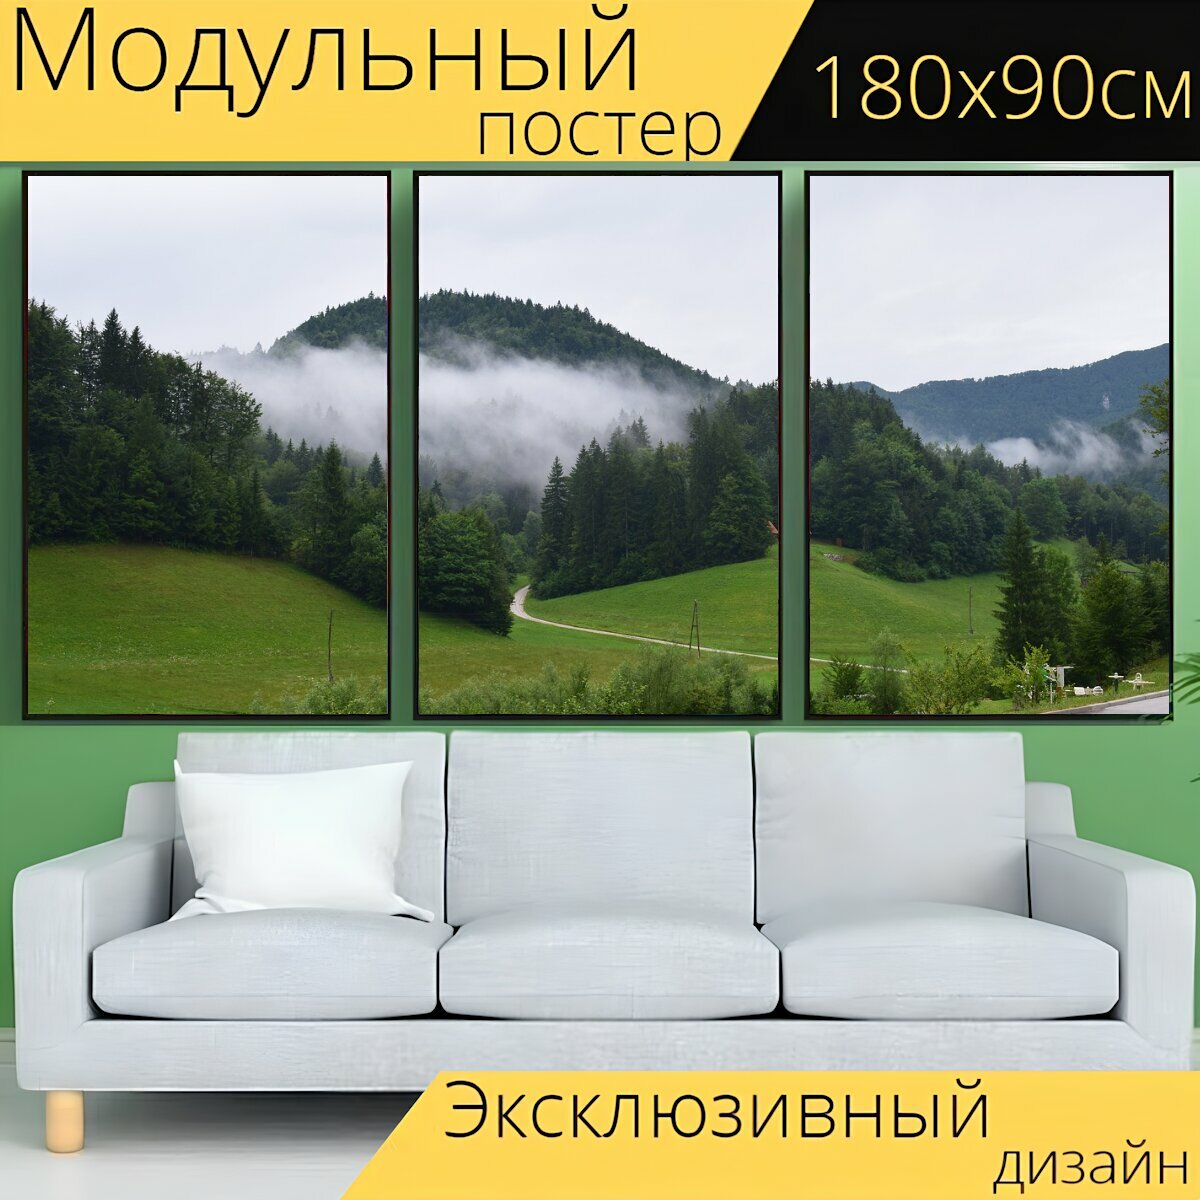 Модульный постер "Природа, гора, горы" 180 x 90 см. для интерьера